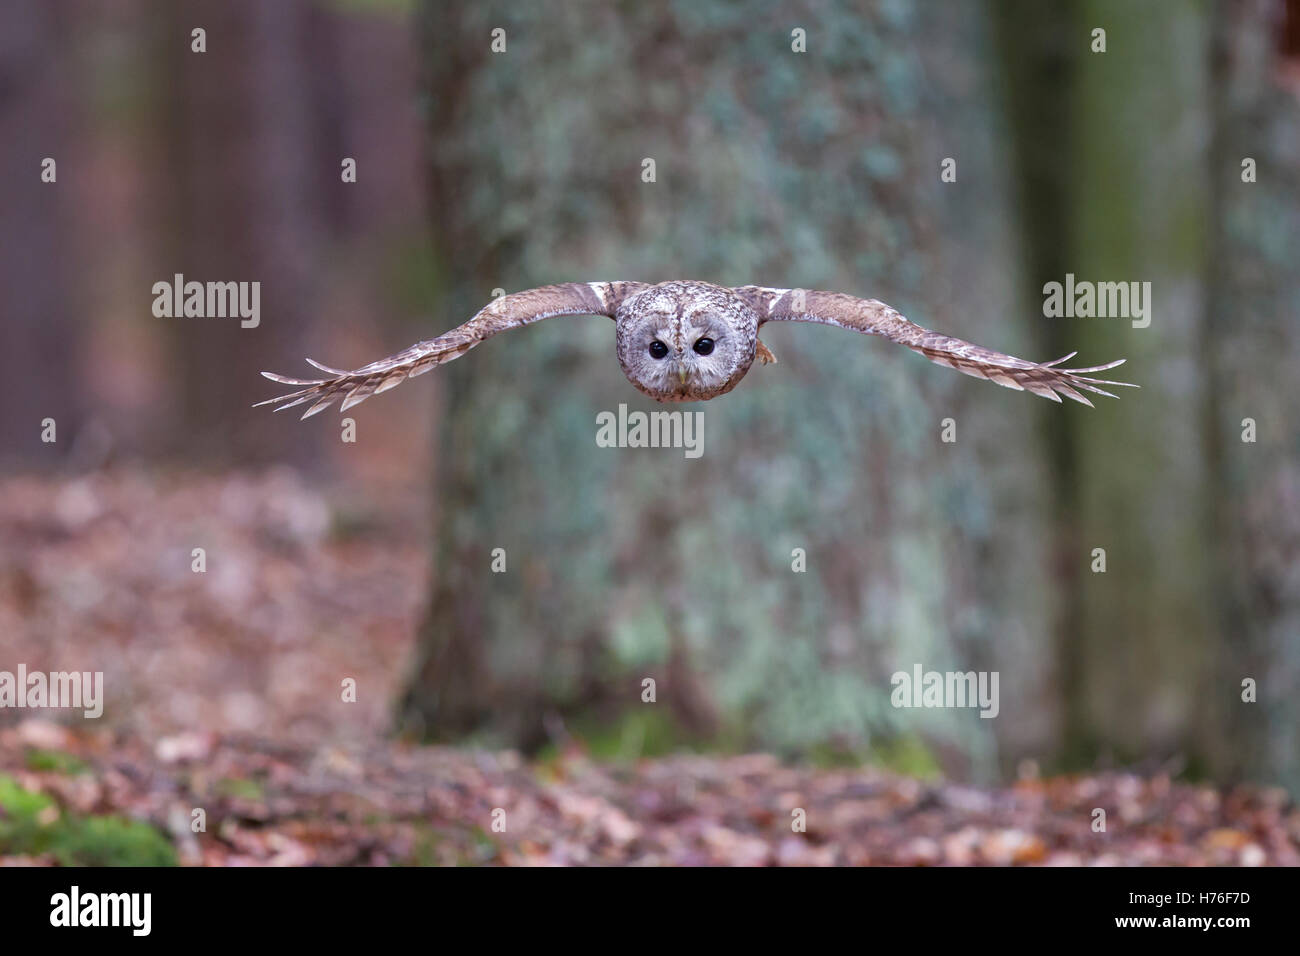 Waldkauz, Strix aluco, Tawny owl Stock Photo